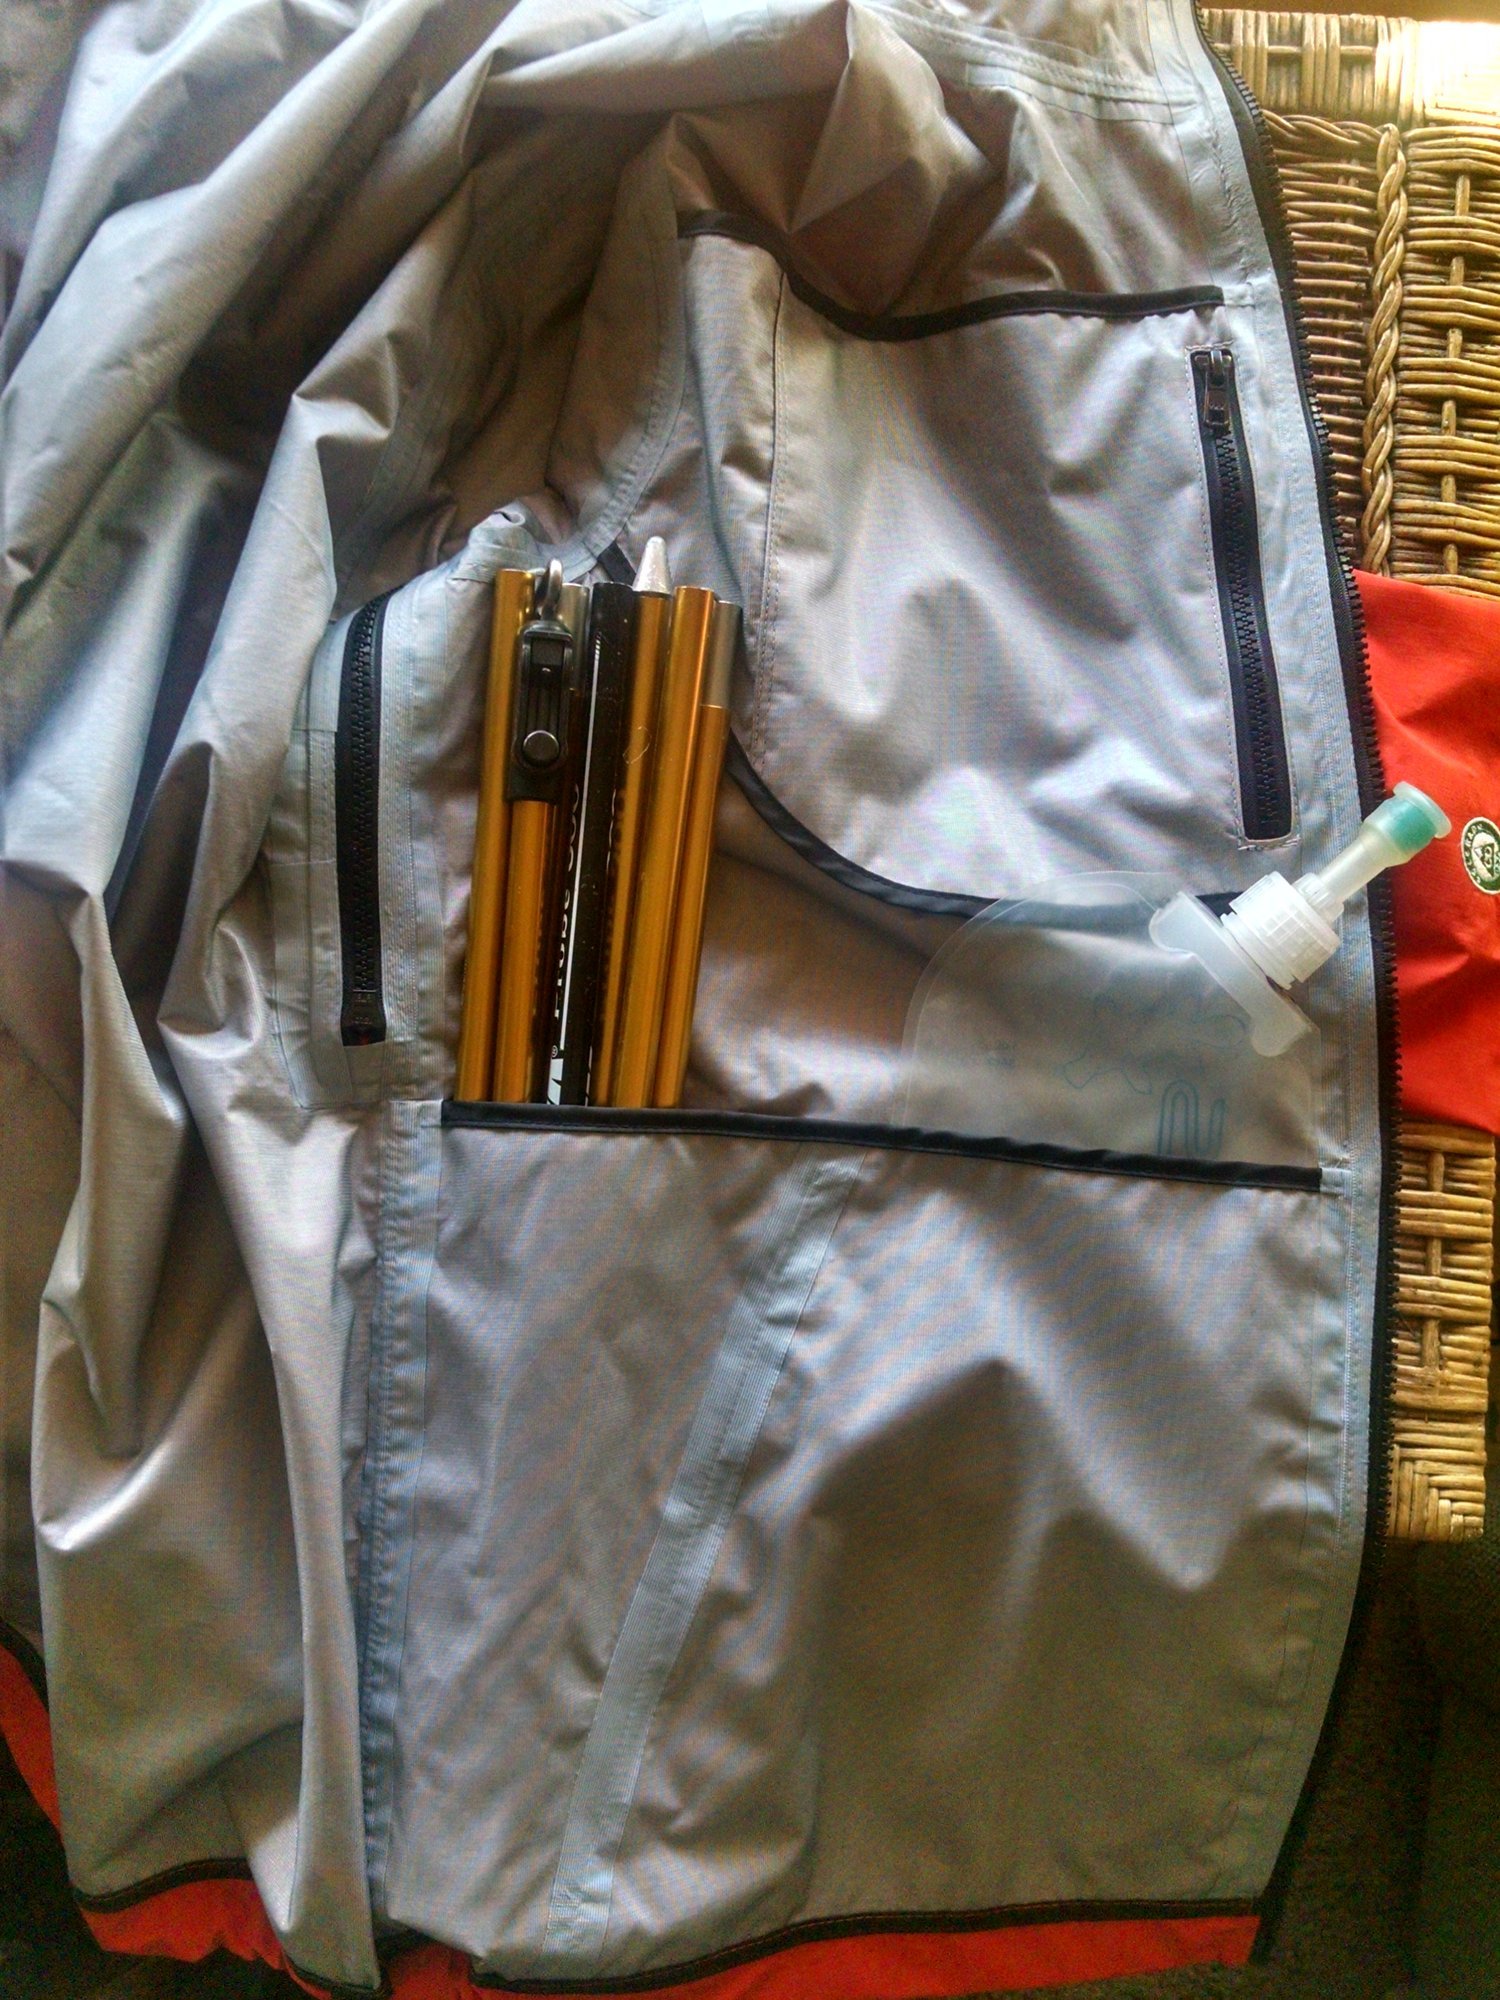 Image of Antero II Plus Hardshell Polartec Neoshell Jacket Blue